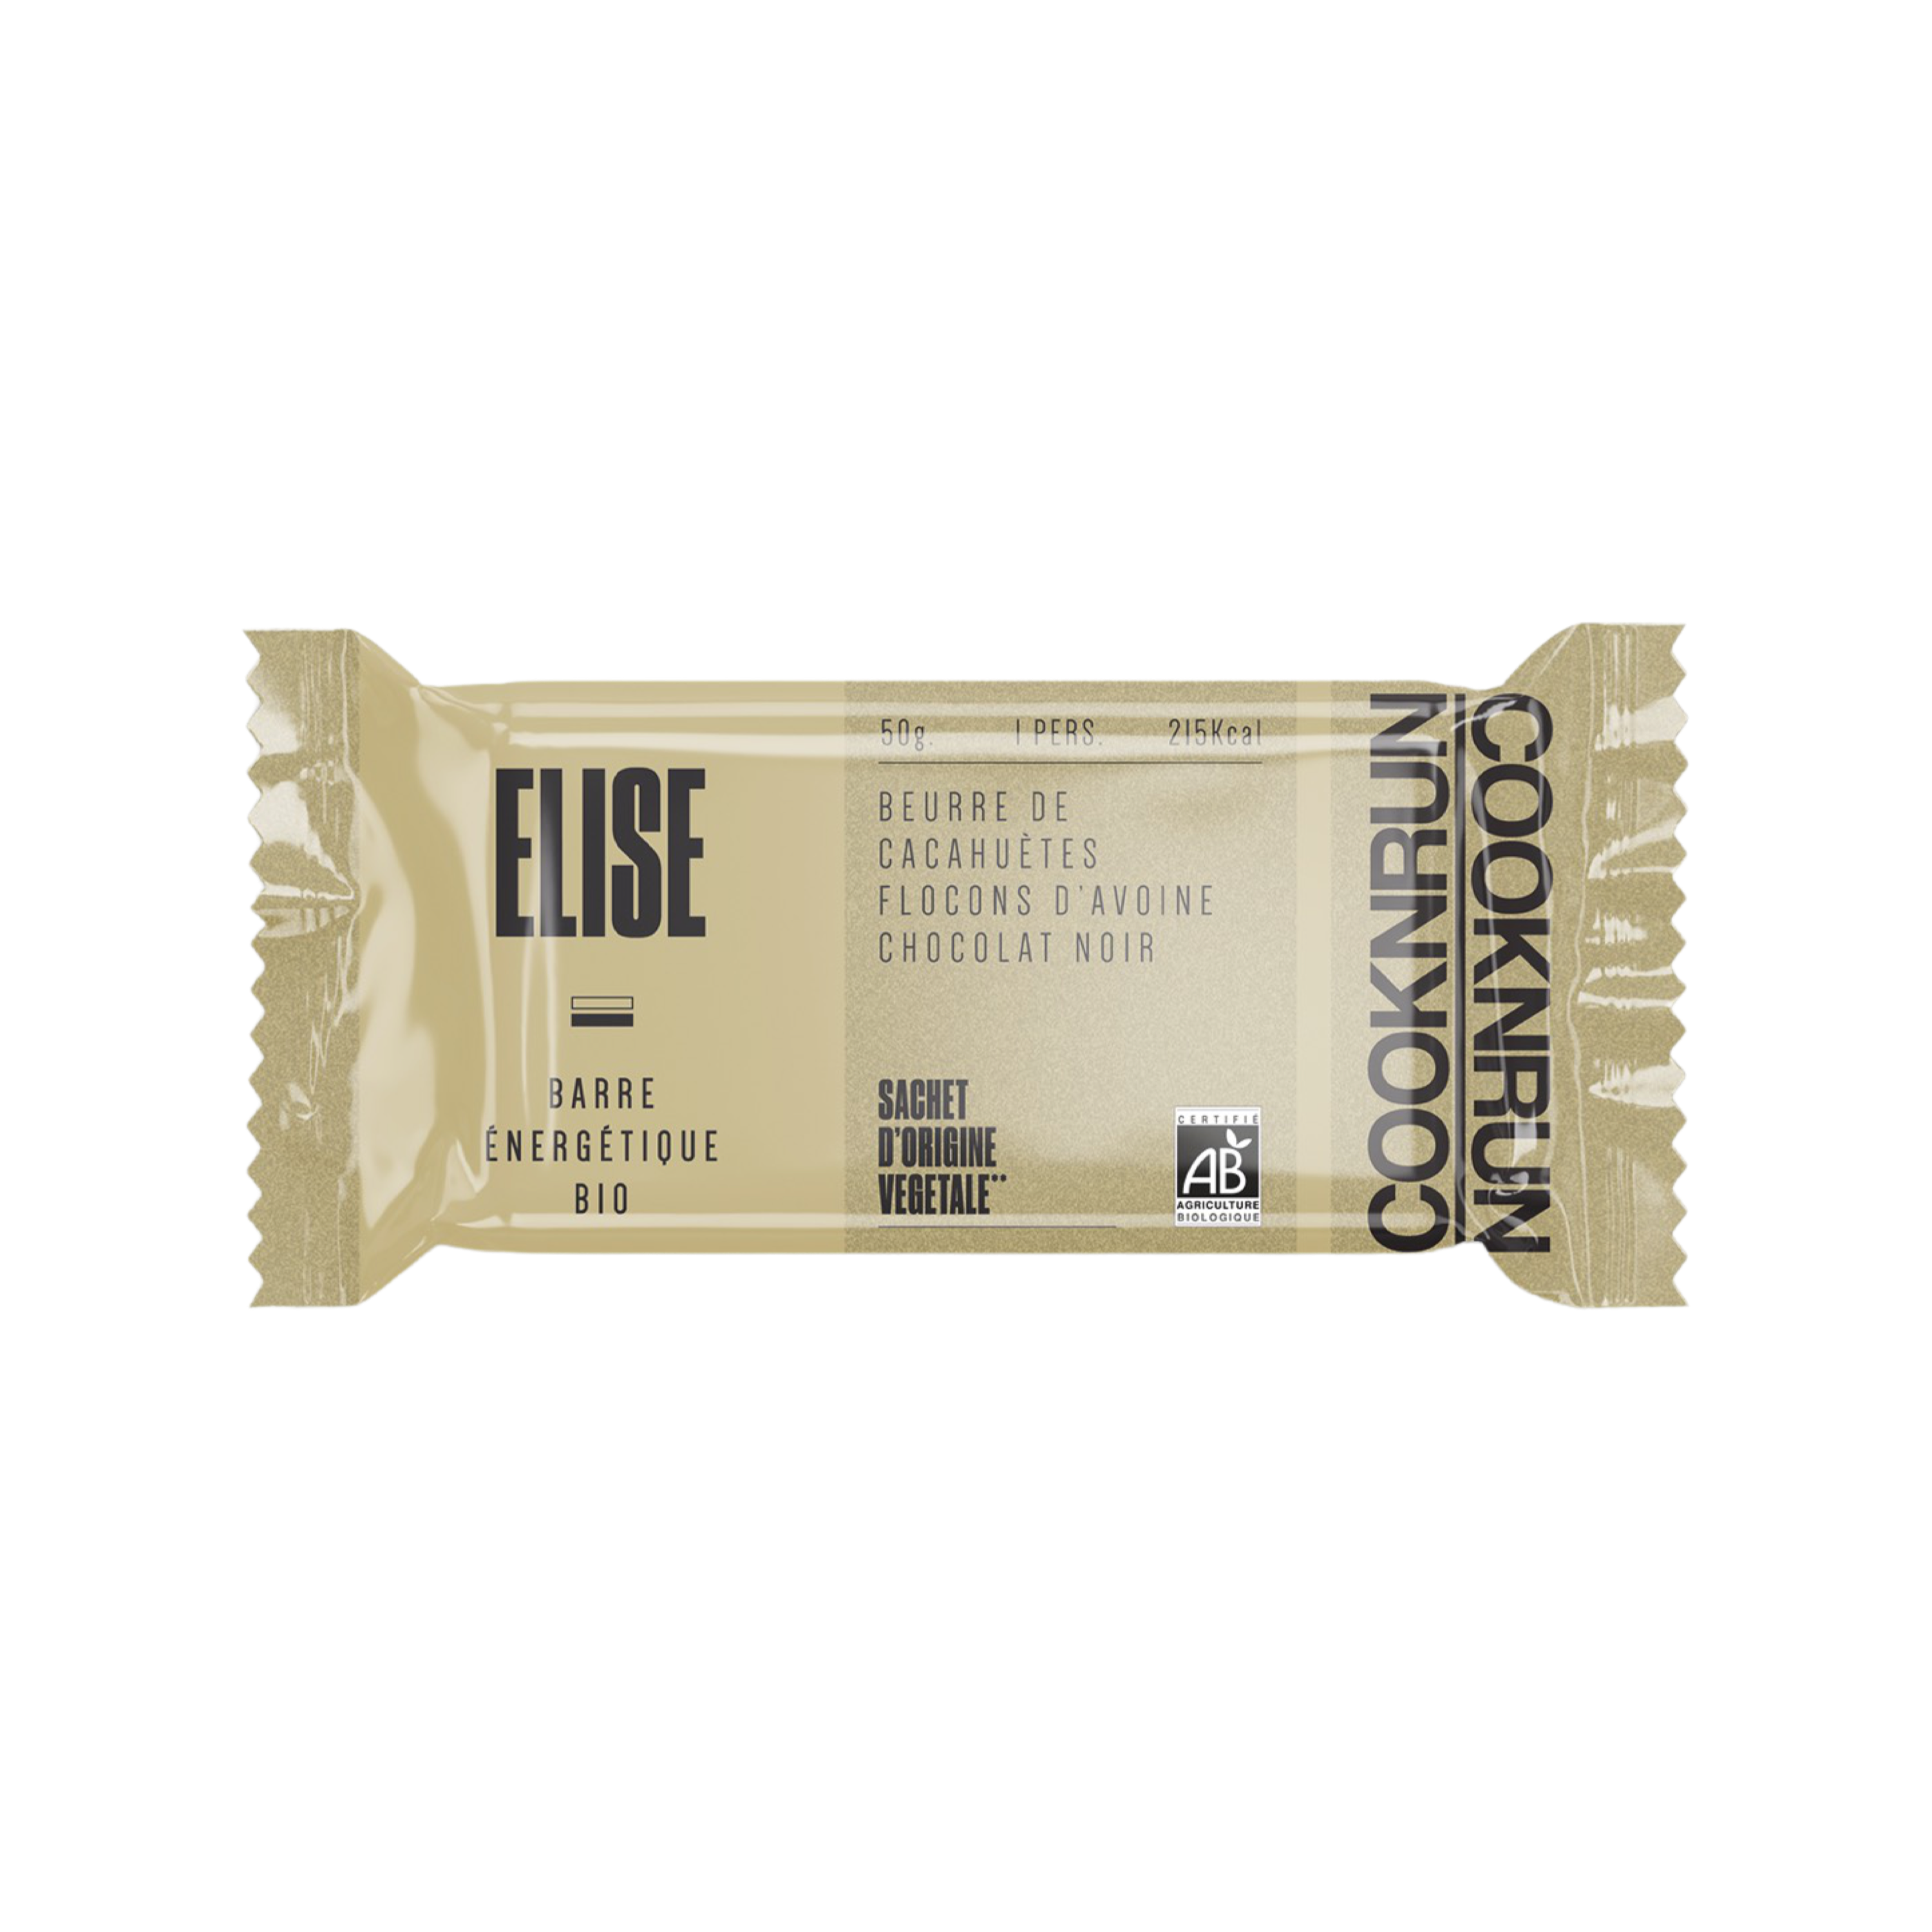 Image de Elise, une barre énergétique bio de chez Cooknrun. Constitué de chocolat noir bio flocon d'avoine et beurre de cacahuètes bio